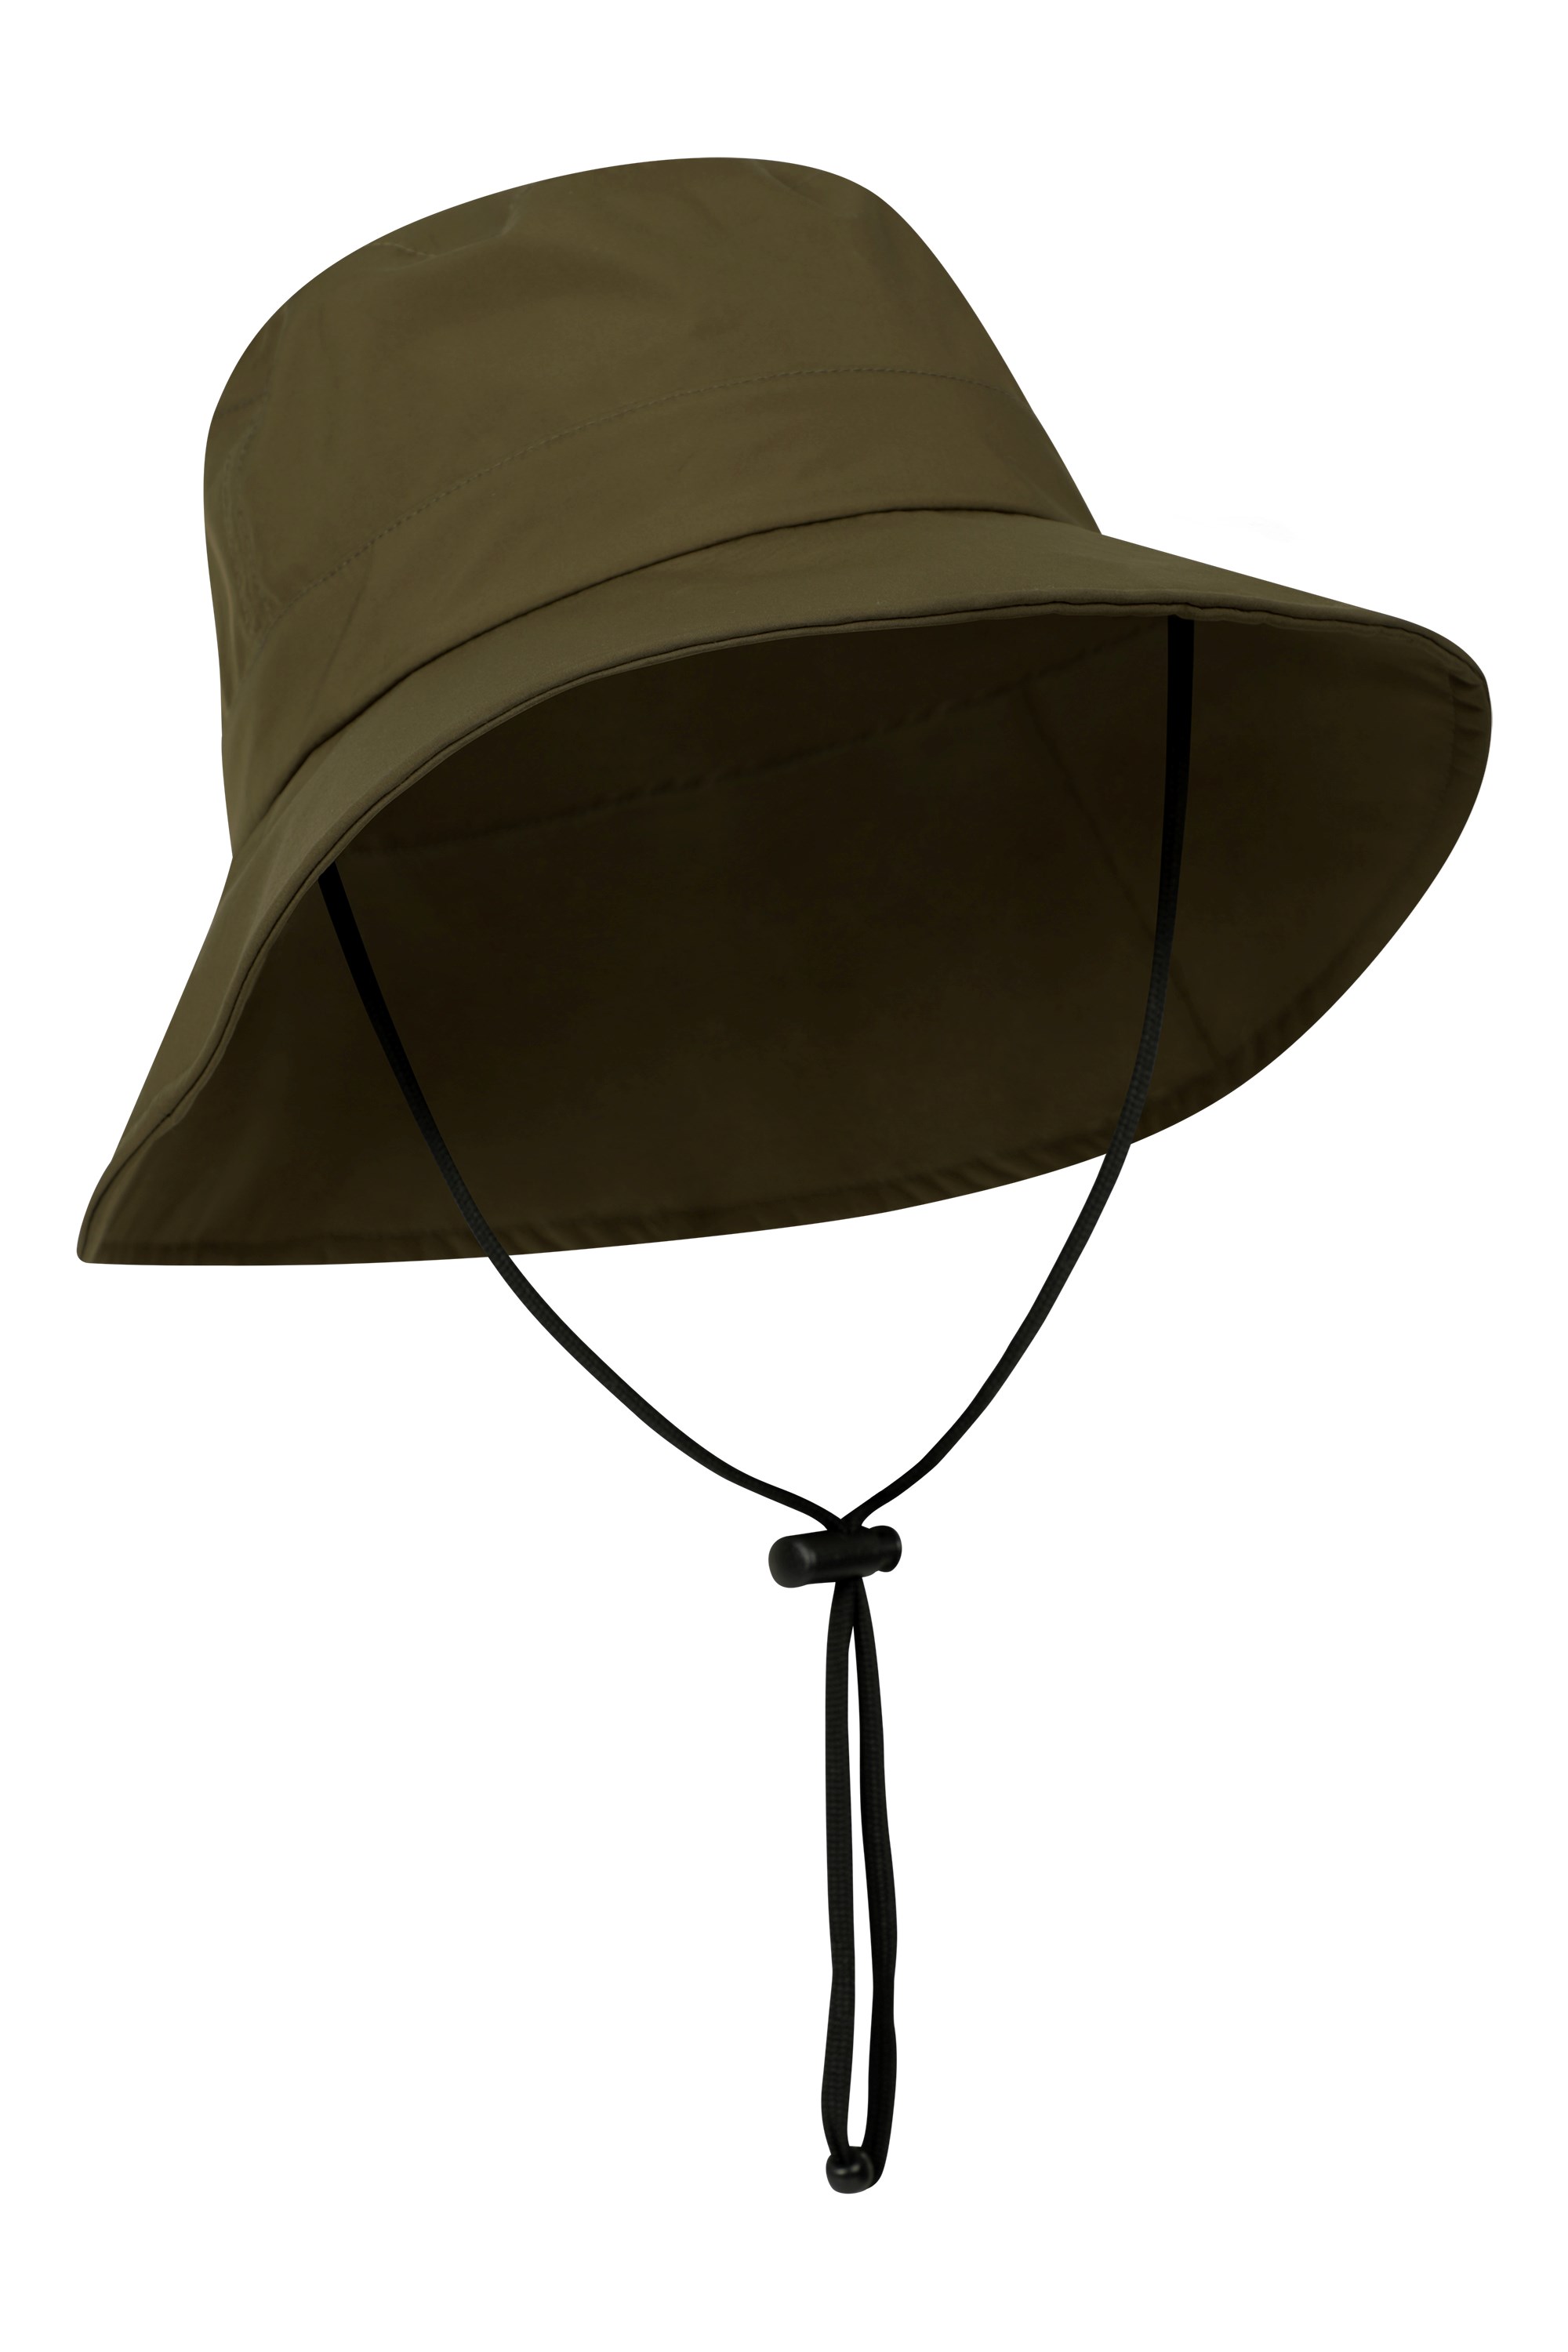  Mountain Warehouse Sombrero de pescador para hombre